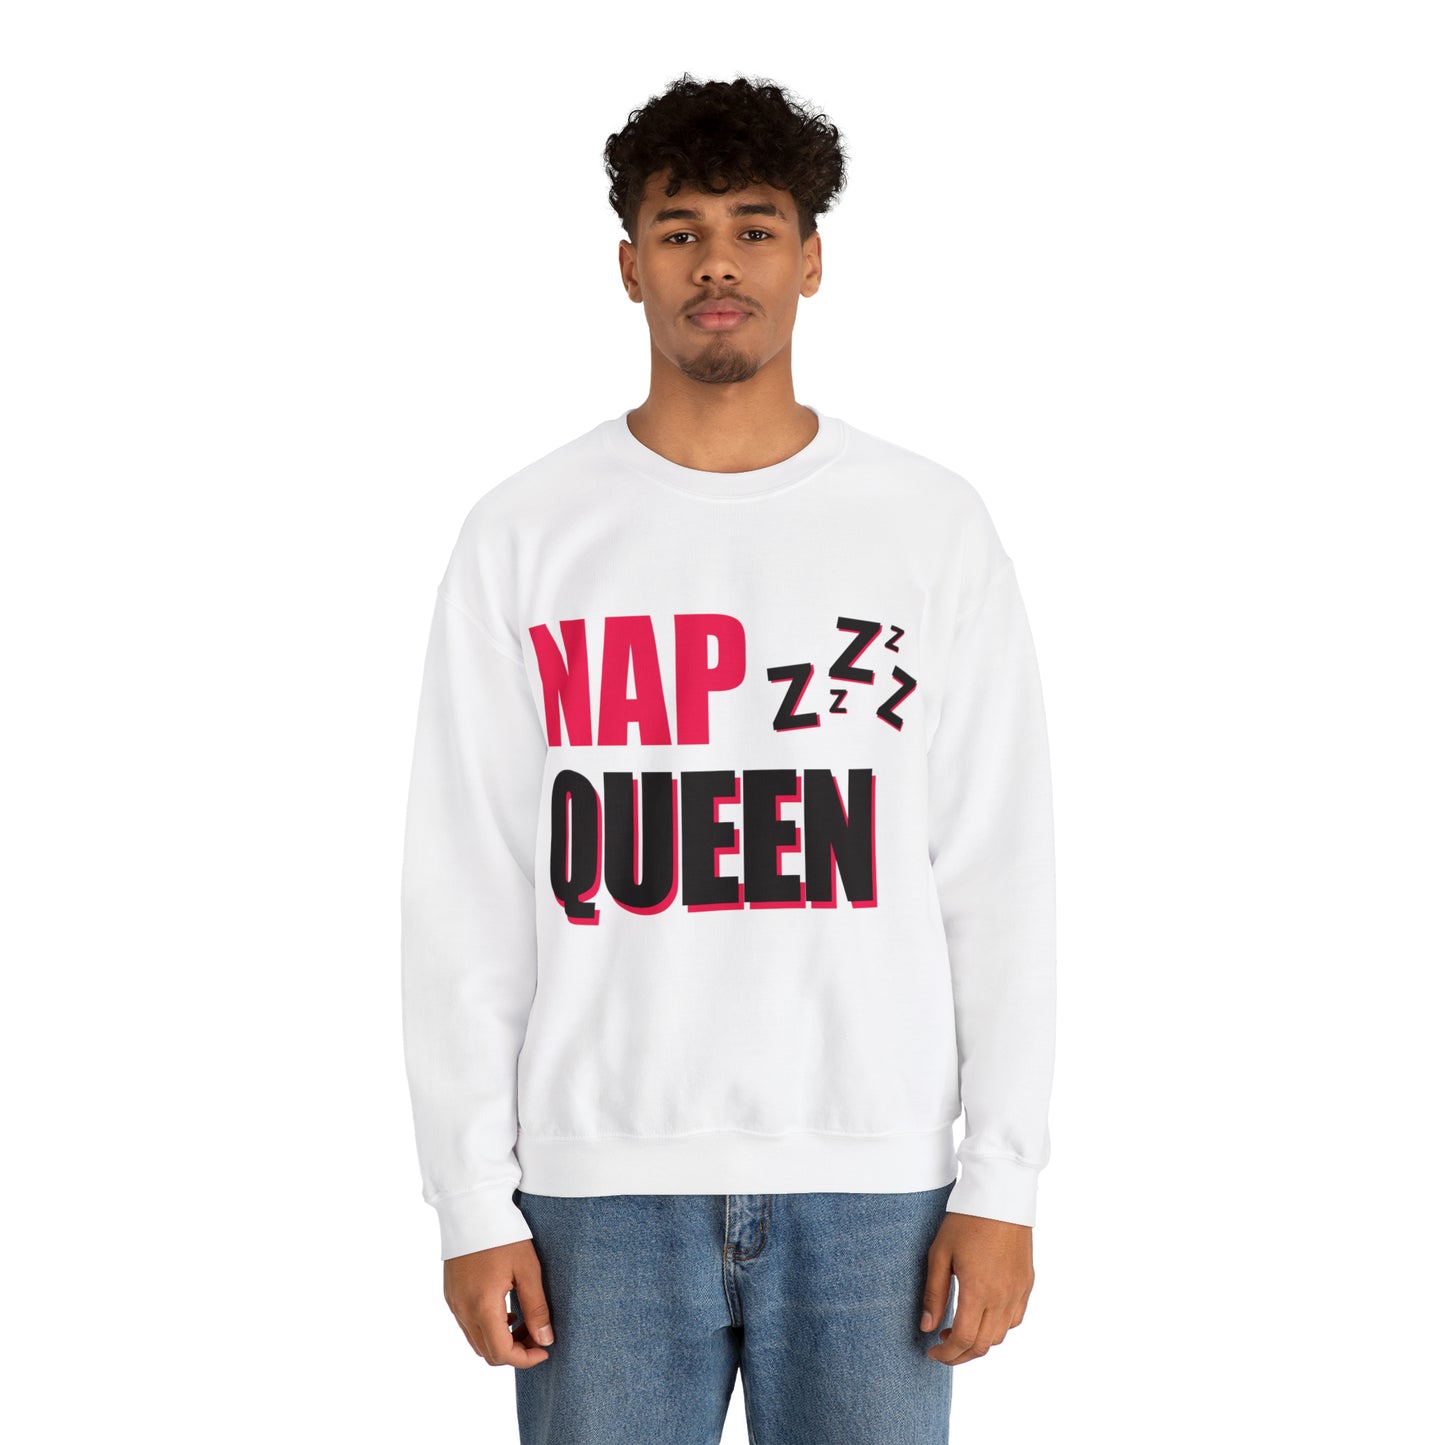 nap queen